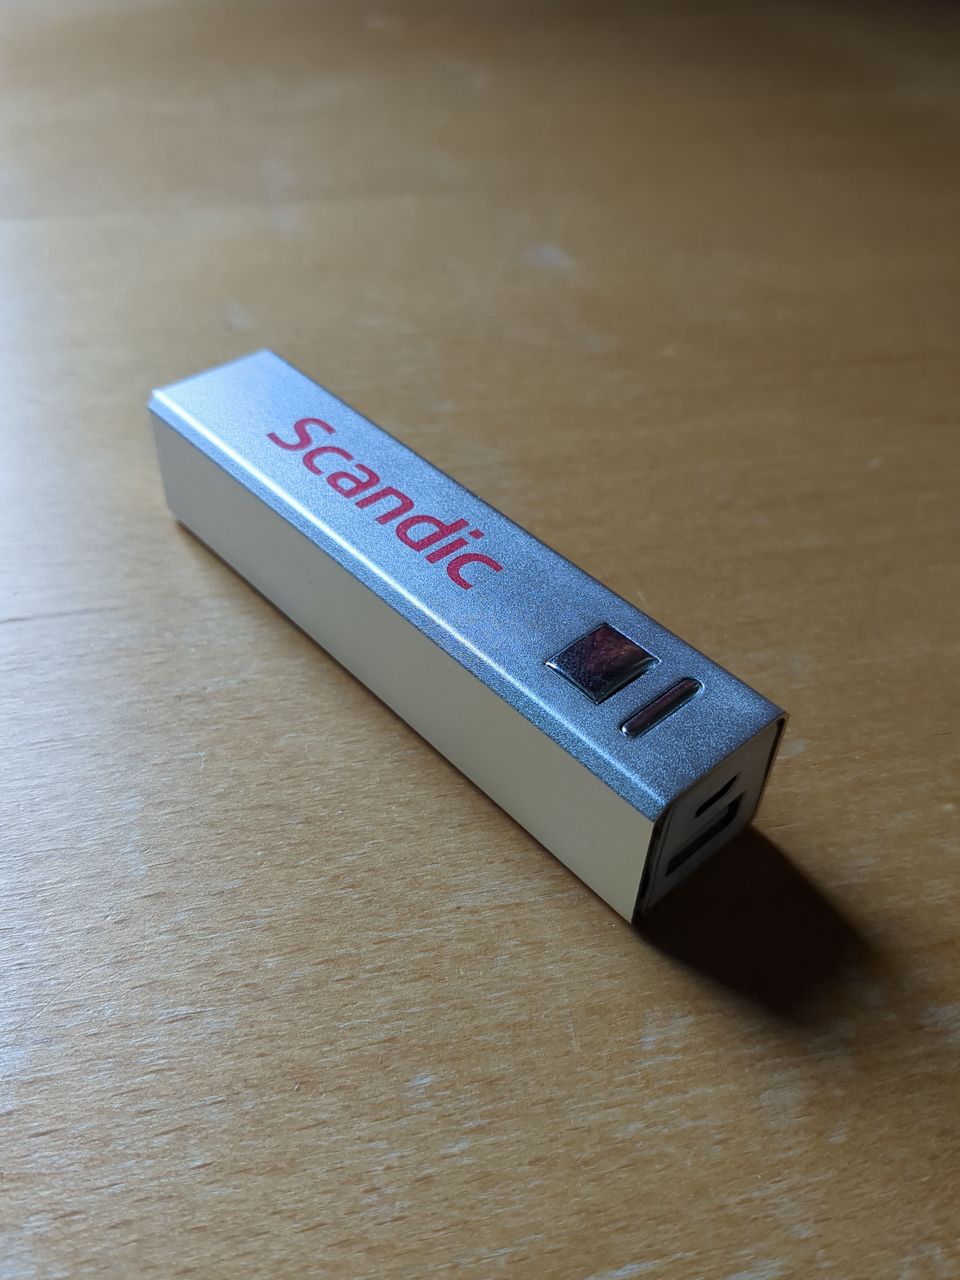 USB virtapankki